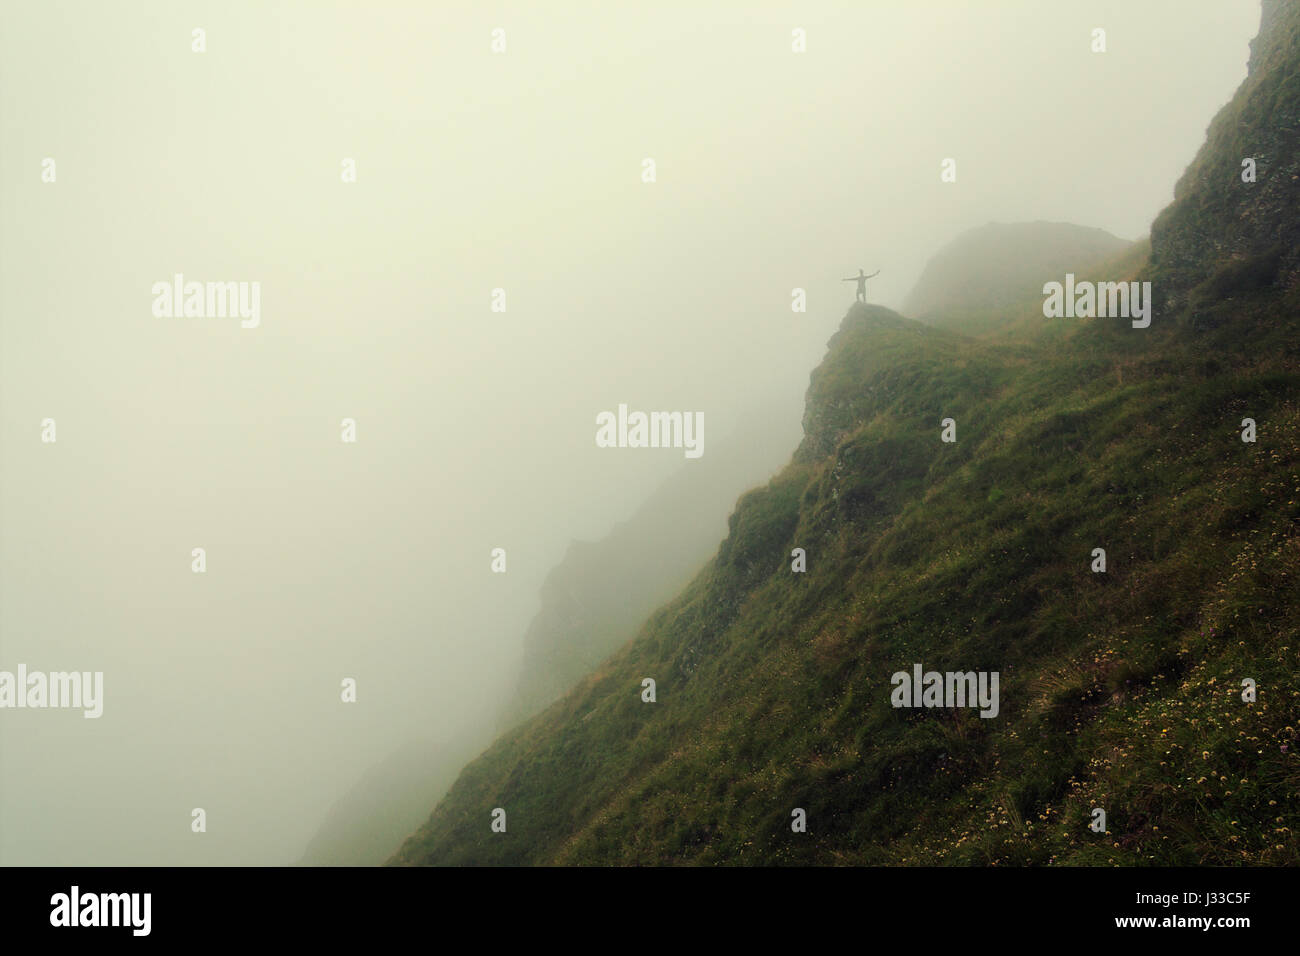 Randonneur debout sur un rocher, entouré de brouillard dans les montagnes Pfunderer, Tyrol du Sud, Italie Banque D'Images